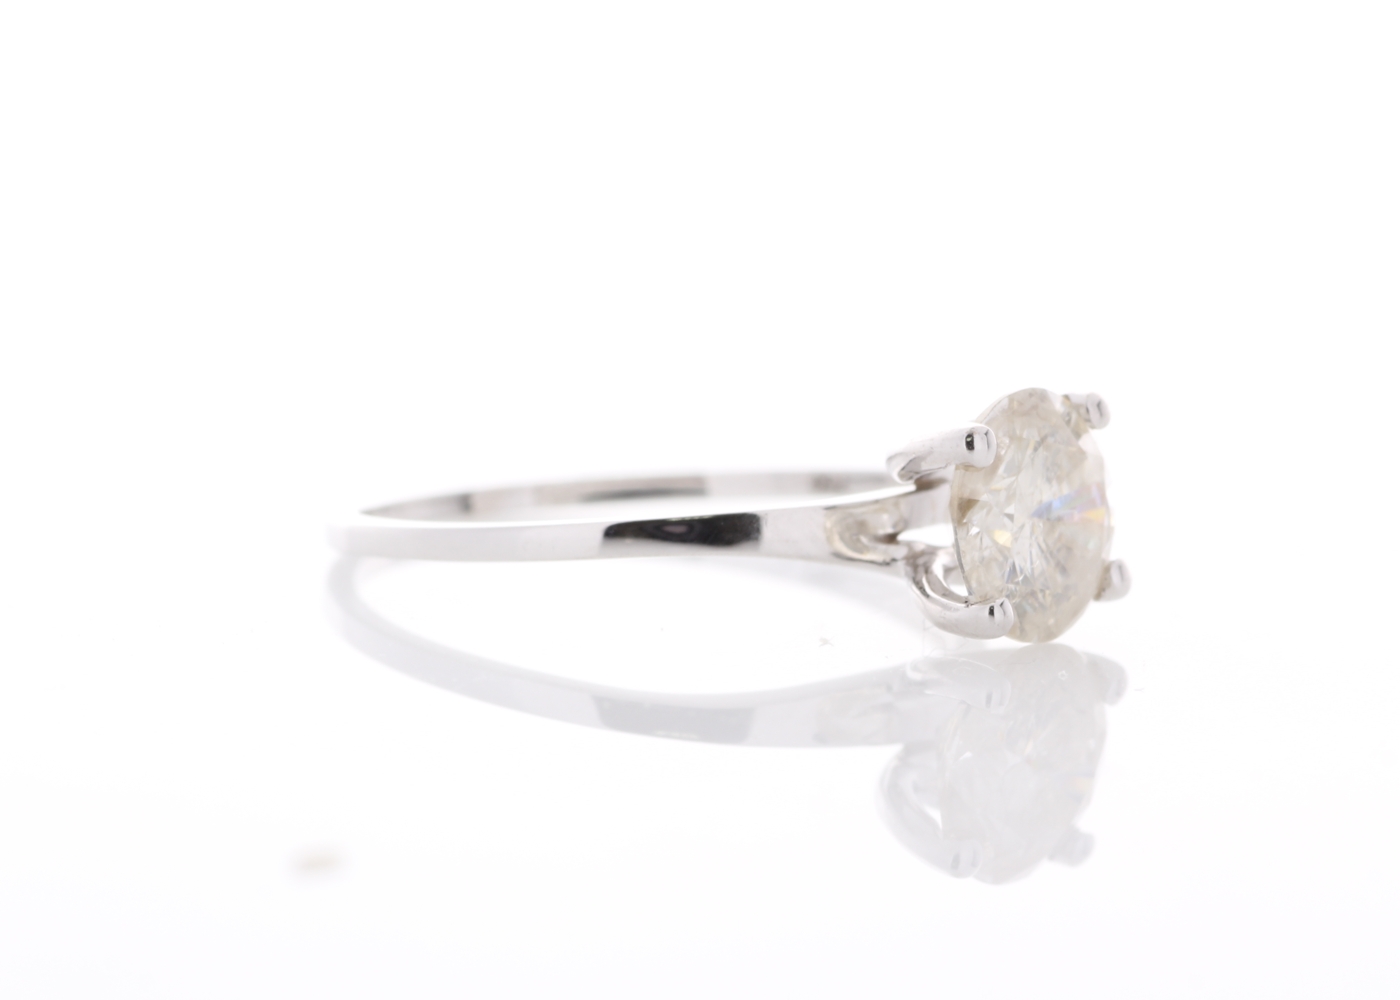 18ct White Gold Rex Set Diamond Ring 1.19 Carats - Image 4 of 5